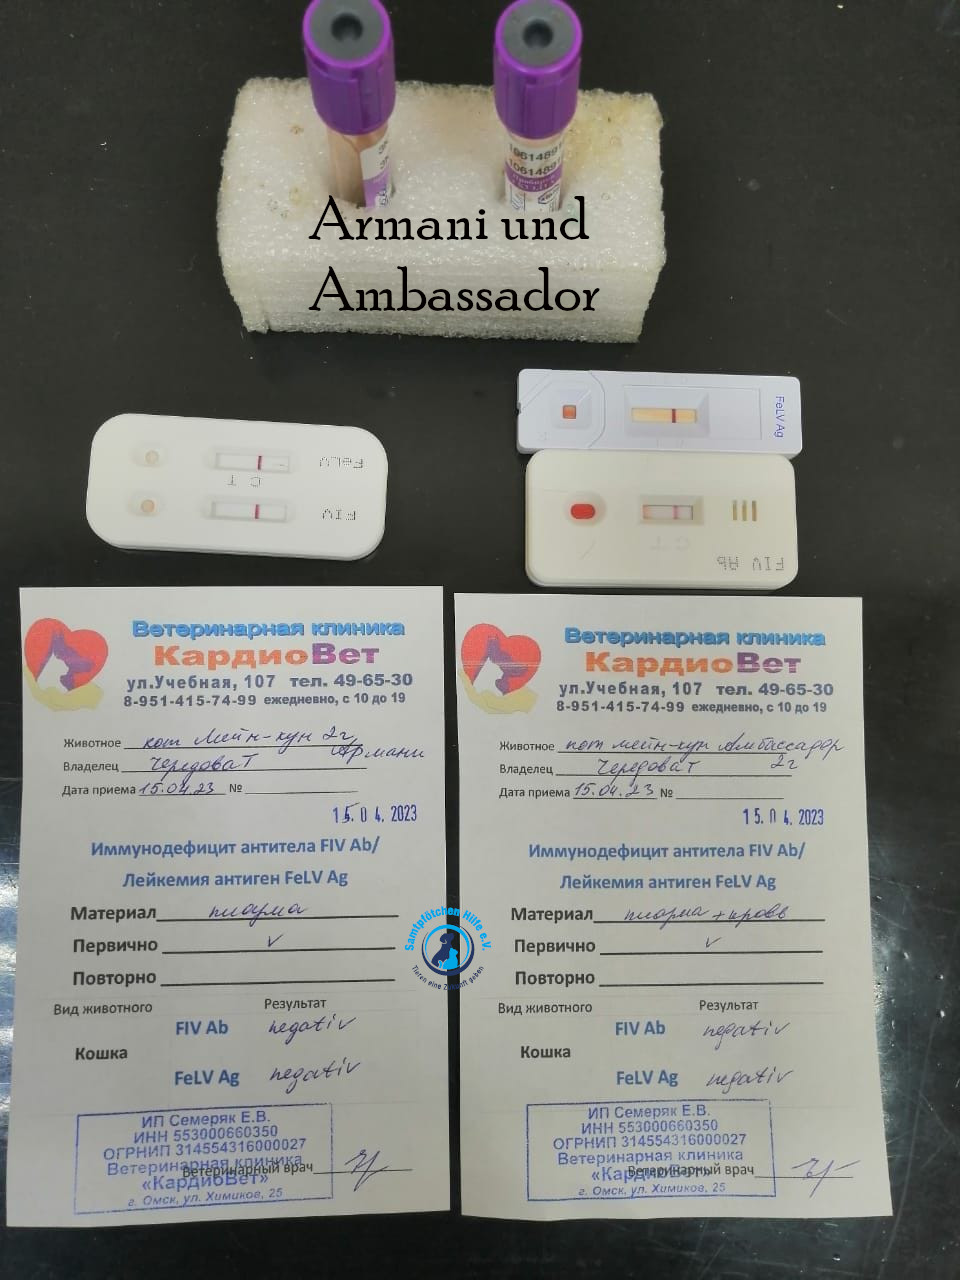 Fremde_Katzen/Armani und Ambassador/Armani und Ambassador13mN.jpg